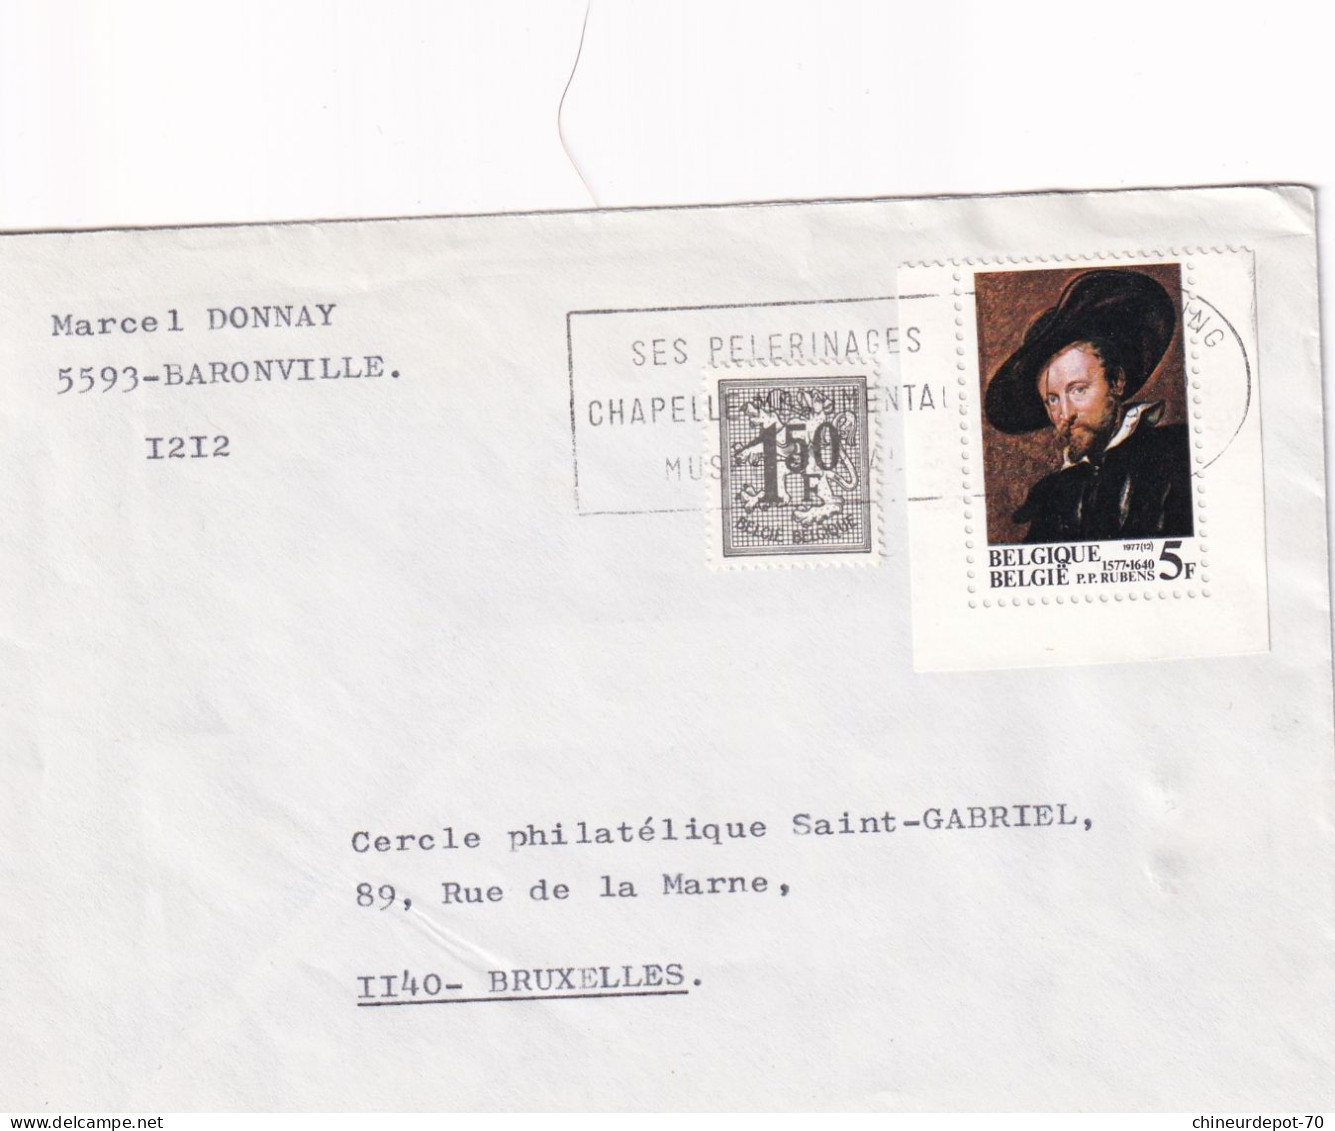 Marcel Donnay Baronville Belgique - Enveloppes